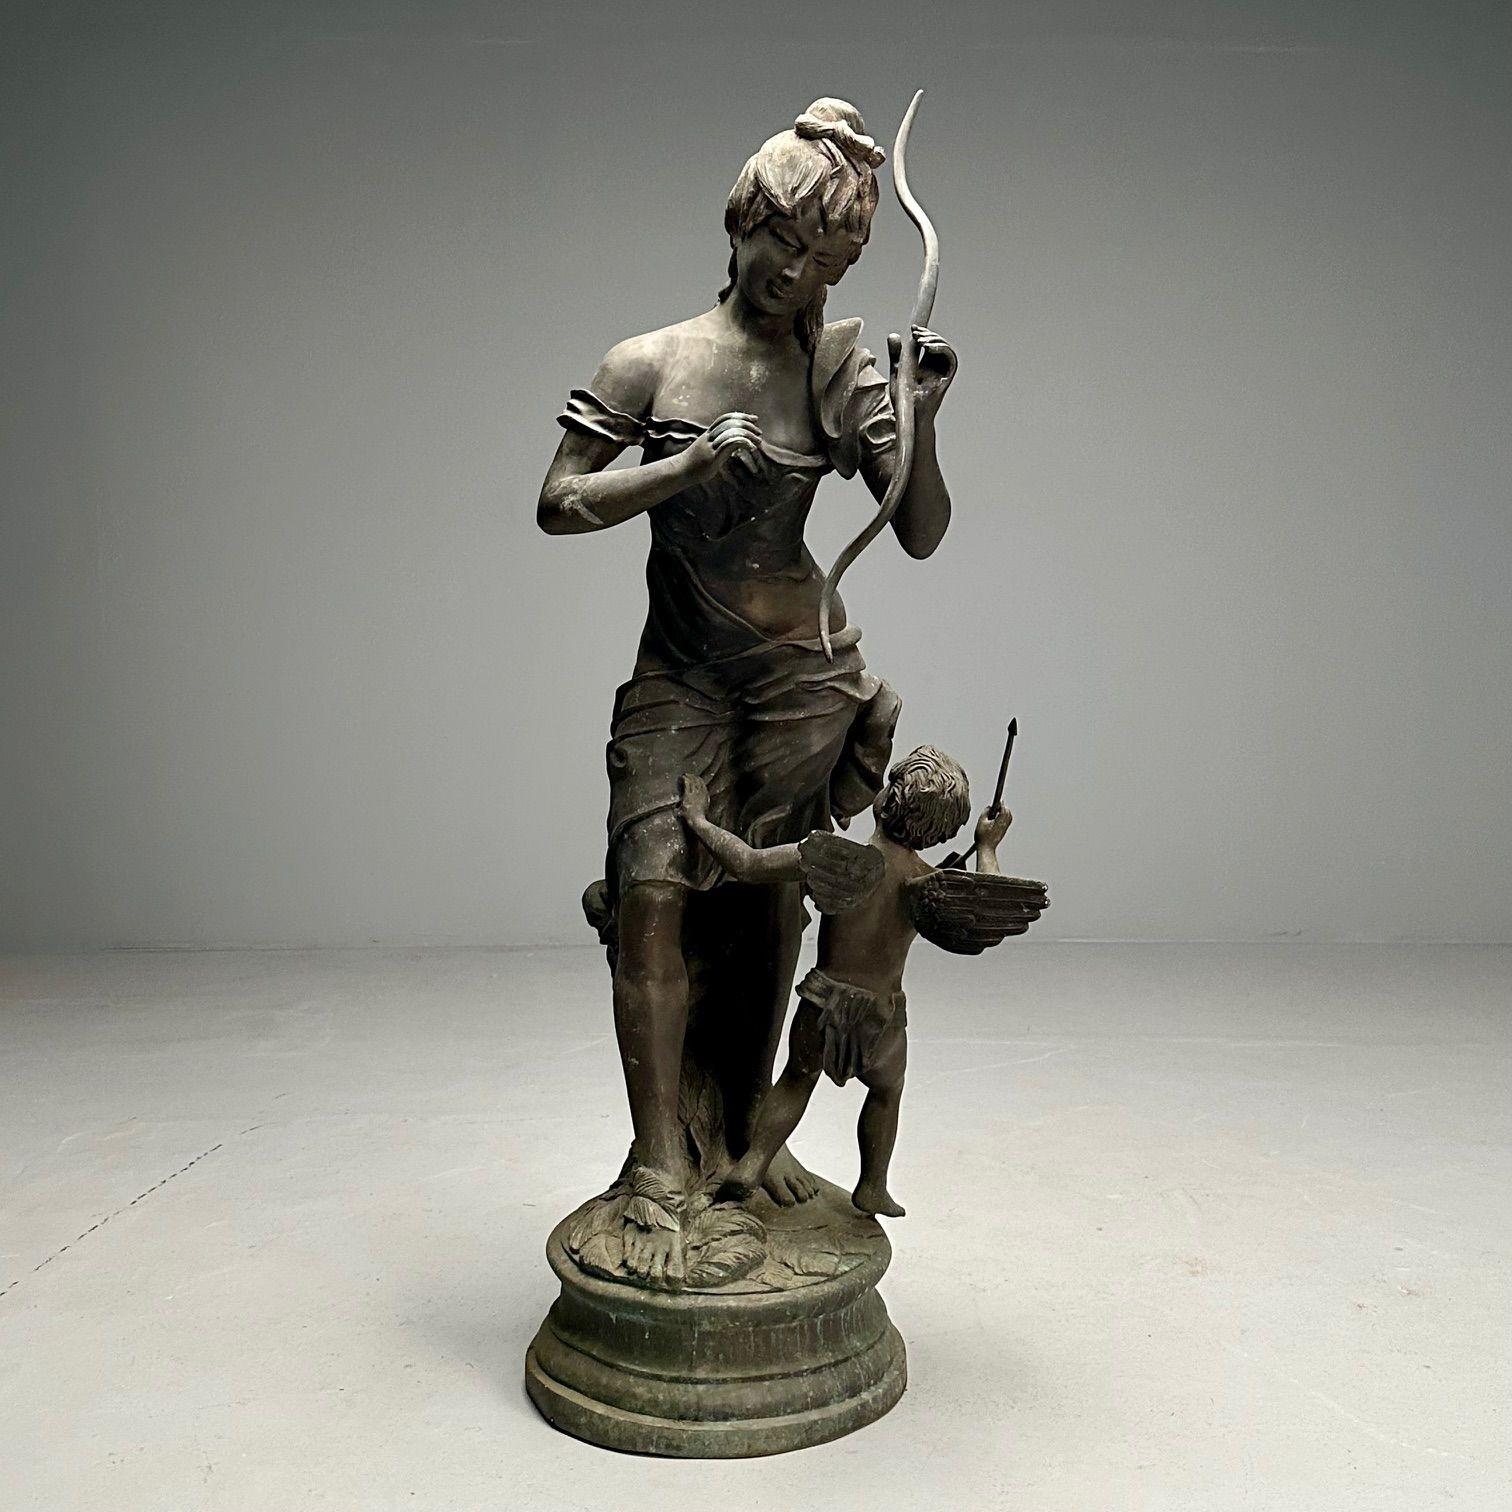 Statue en bronze patiné représentant Vénus désarmant Cupidon. Vénus s'amuse à tenir l'arc de Cupidon tandis que ce dernier regarde dans les airs. 
 
Achetée à Tepper Galleries à New York et expédiée à São Paulo, Brésil, cette statue grandeur nature